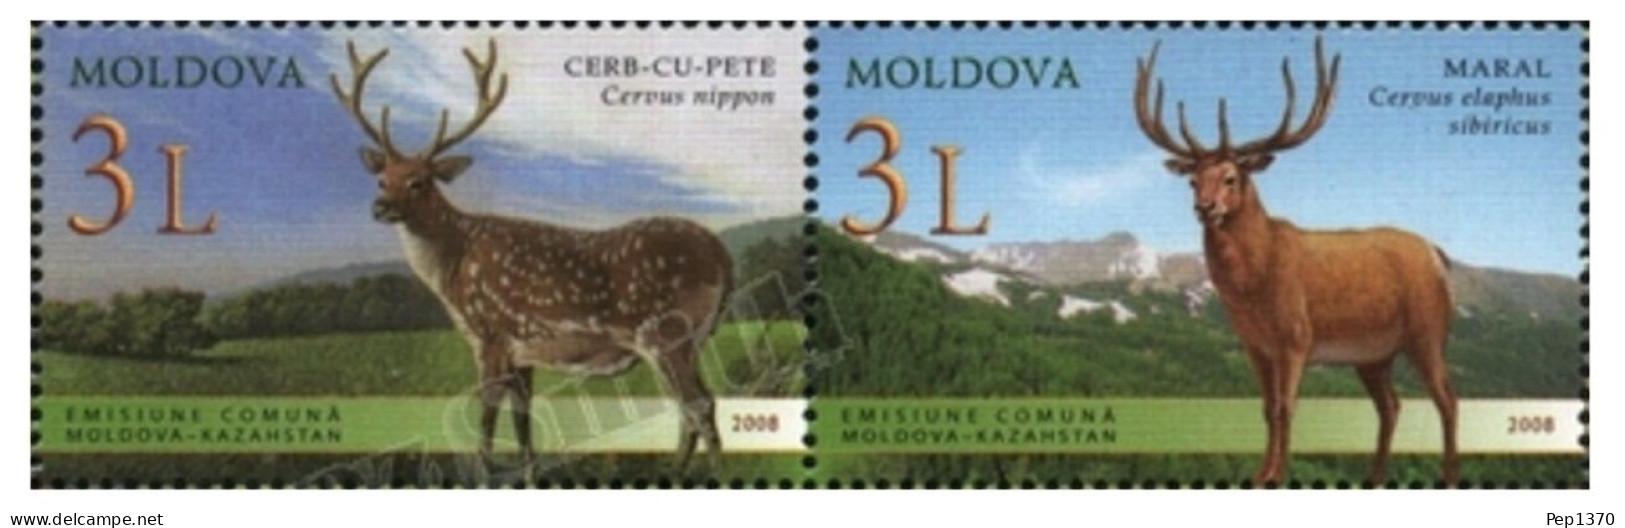 MOLDAVIA 2008 - MOLDOVA - CIERVOS - CERFS - DEERS - YVERT 545/546** - Wild